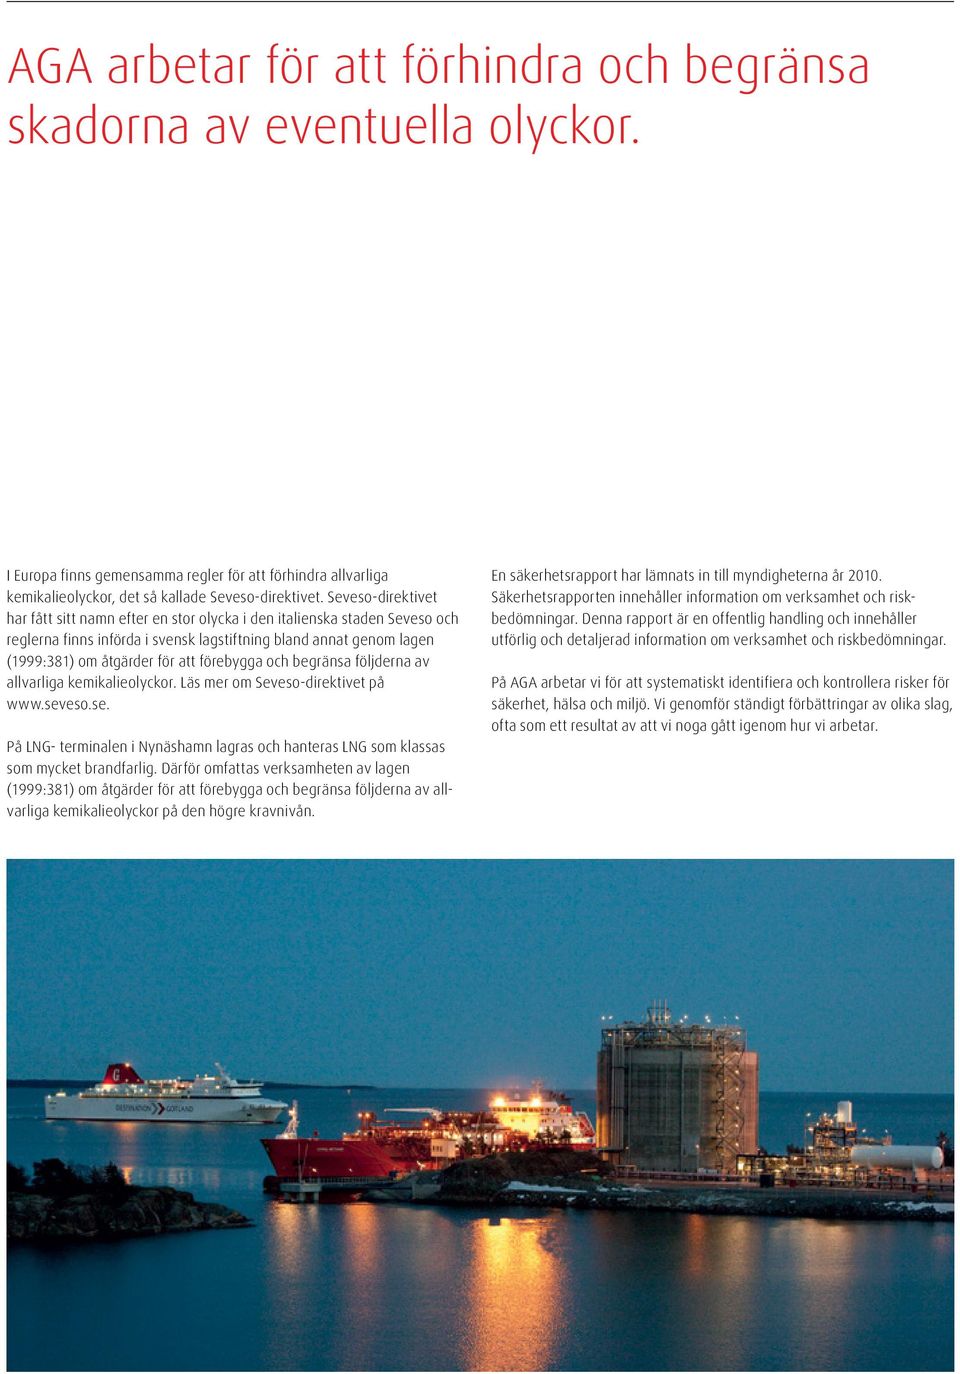 förebygga och begränsa följderna av allvarliga kemikalieolyckor. Läs mer om Seveso-direktivet på www.seveso.se. På LNG- terminalen i Nynäshamn lagras och hanteras LNG som klassas som mycket brandfarlig.